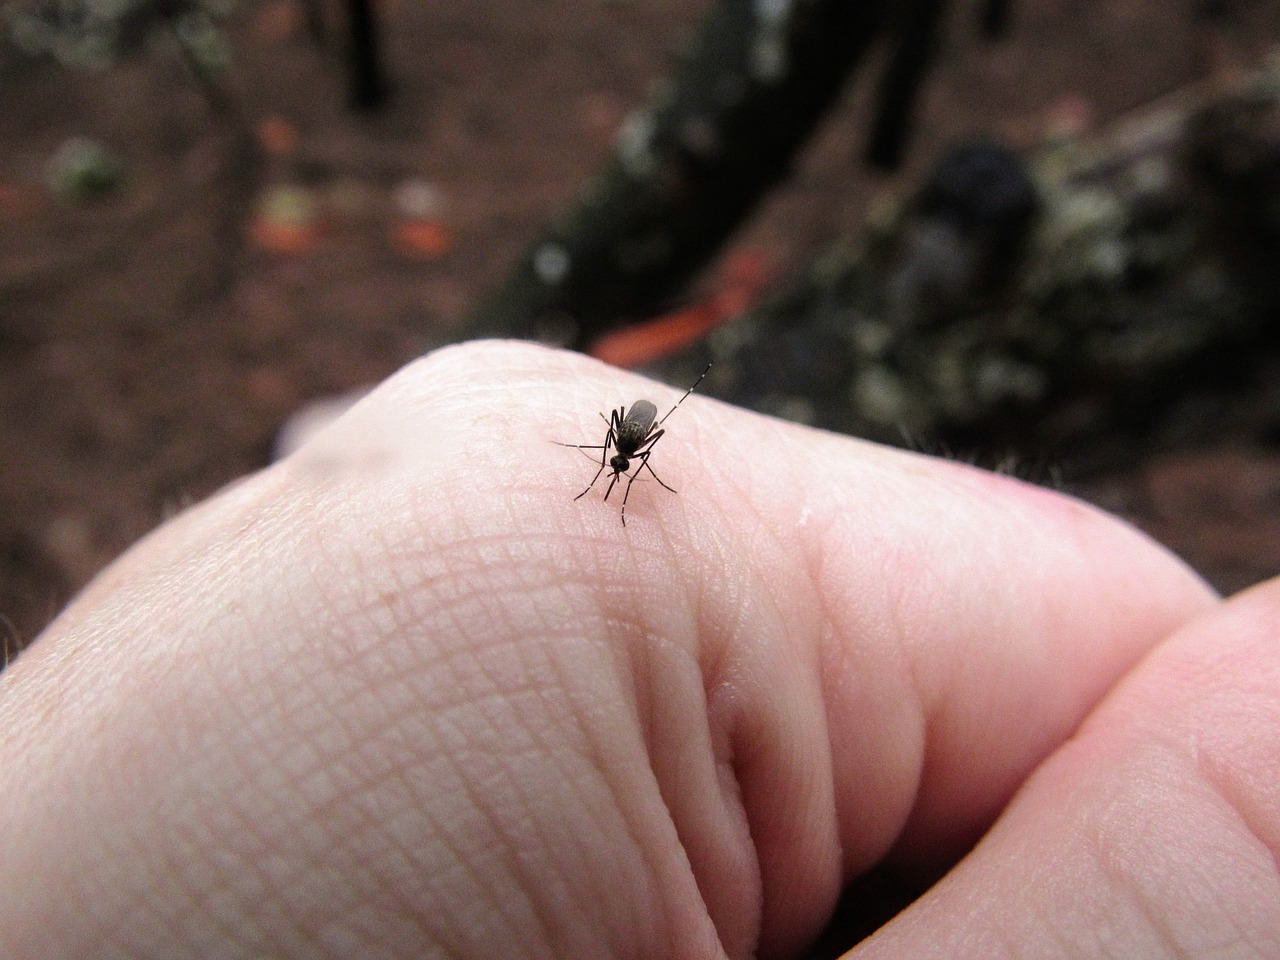 Je bekijkt nu Muggenbulten op vervelende plekken: Hoe om te gaan met jeuk en irritatie?